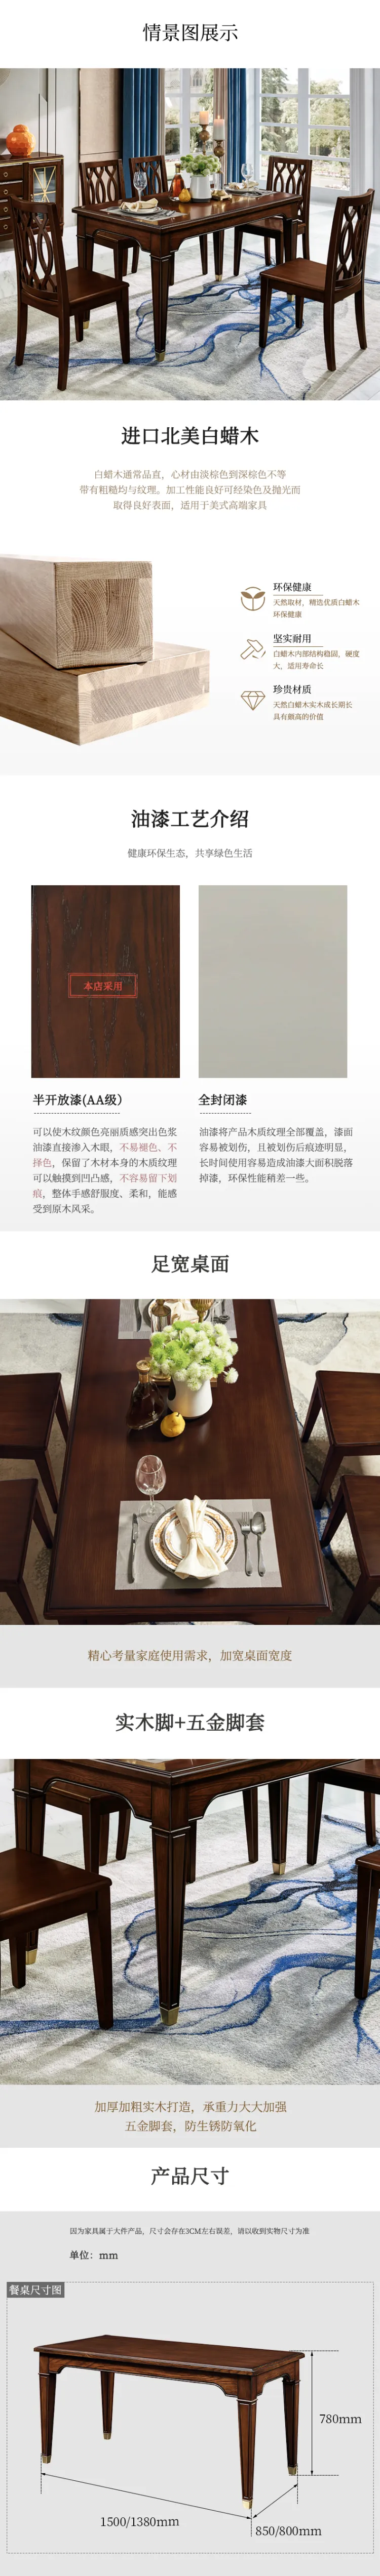 金唯 拉菲红现代美式进口白蜡木时尚优雅长餐台餐厅 MH-603A(图1)